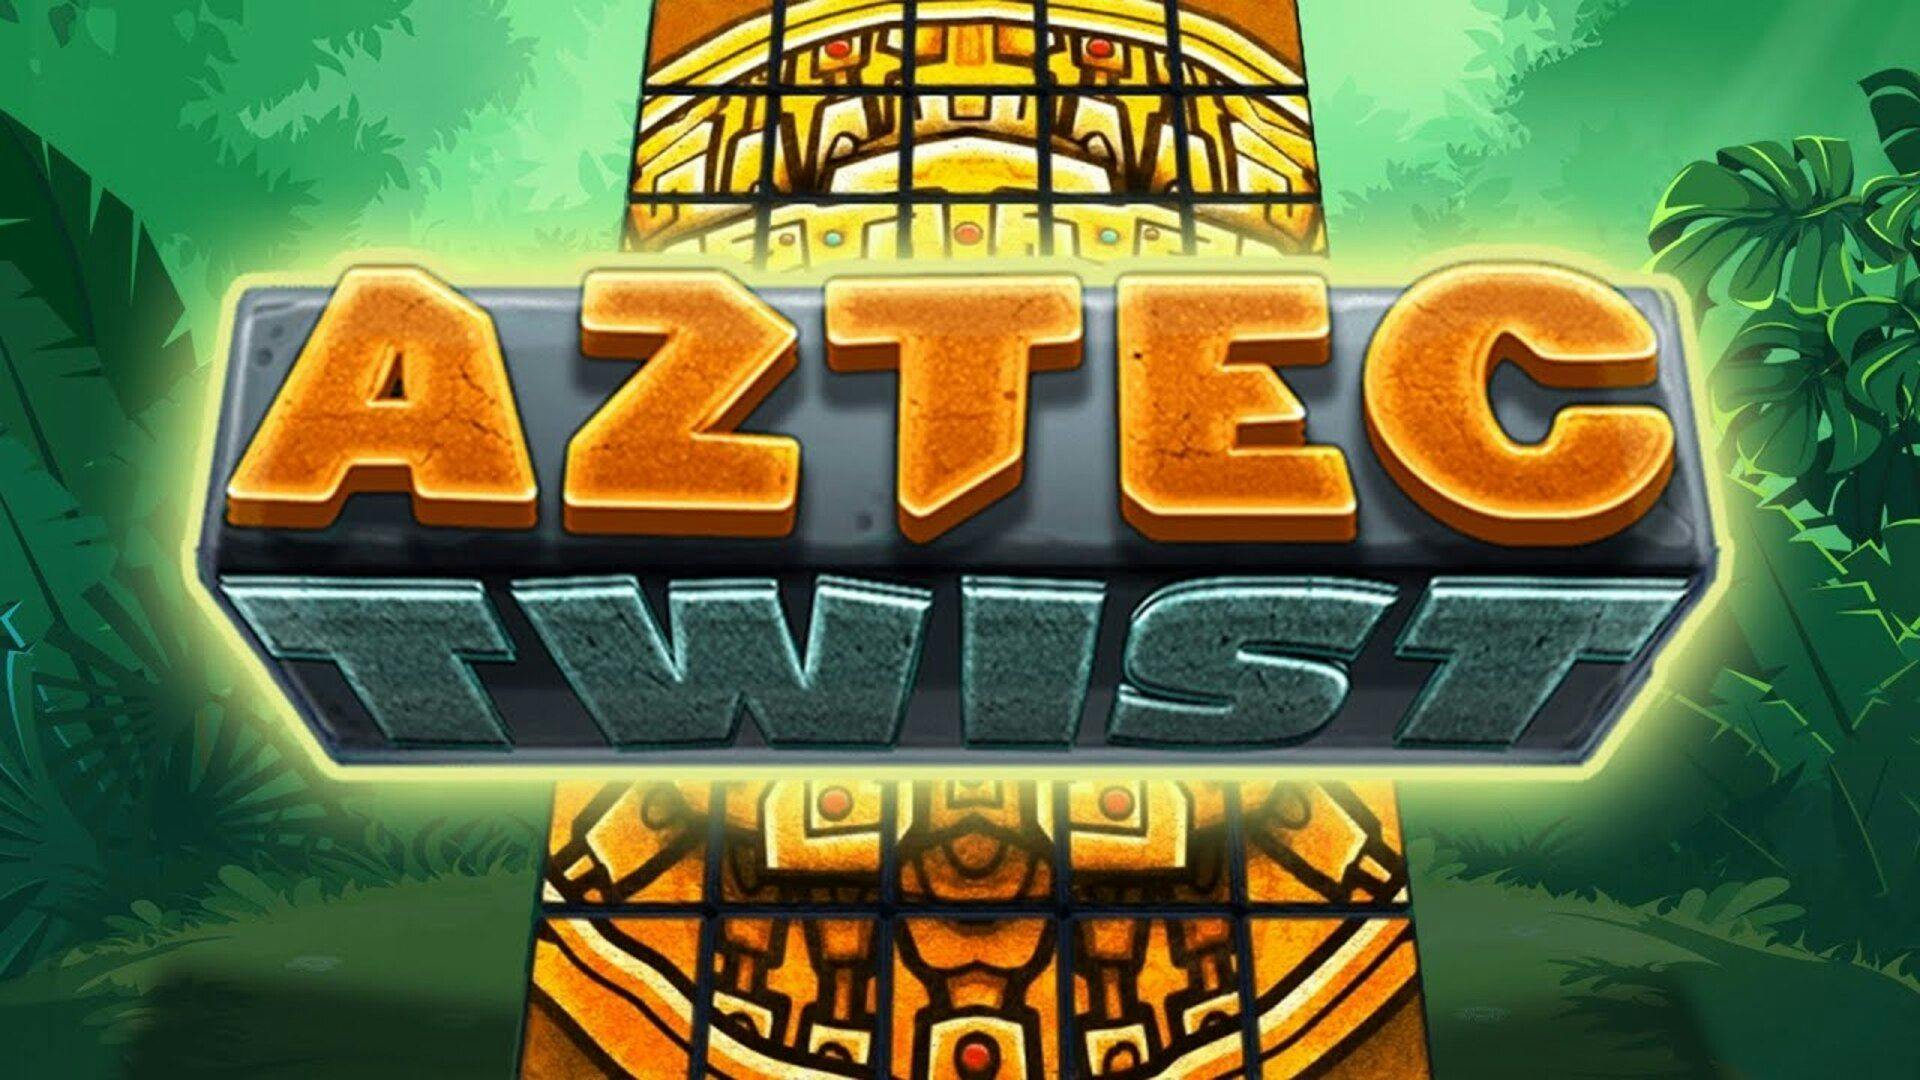 Aztec Twist Slot Machine Online Free Game Play